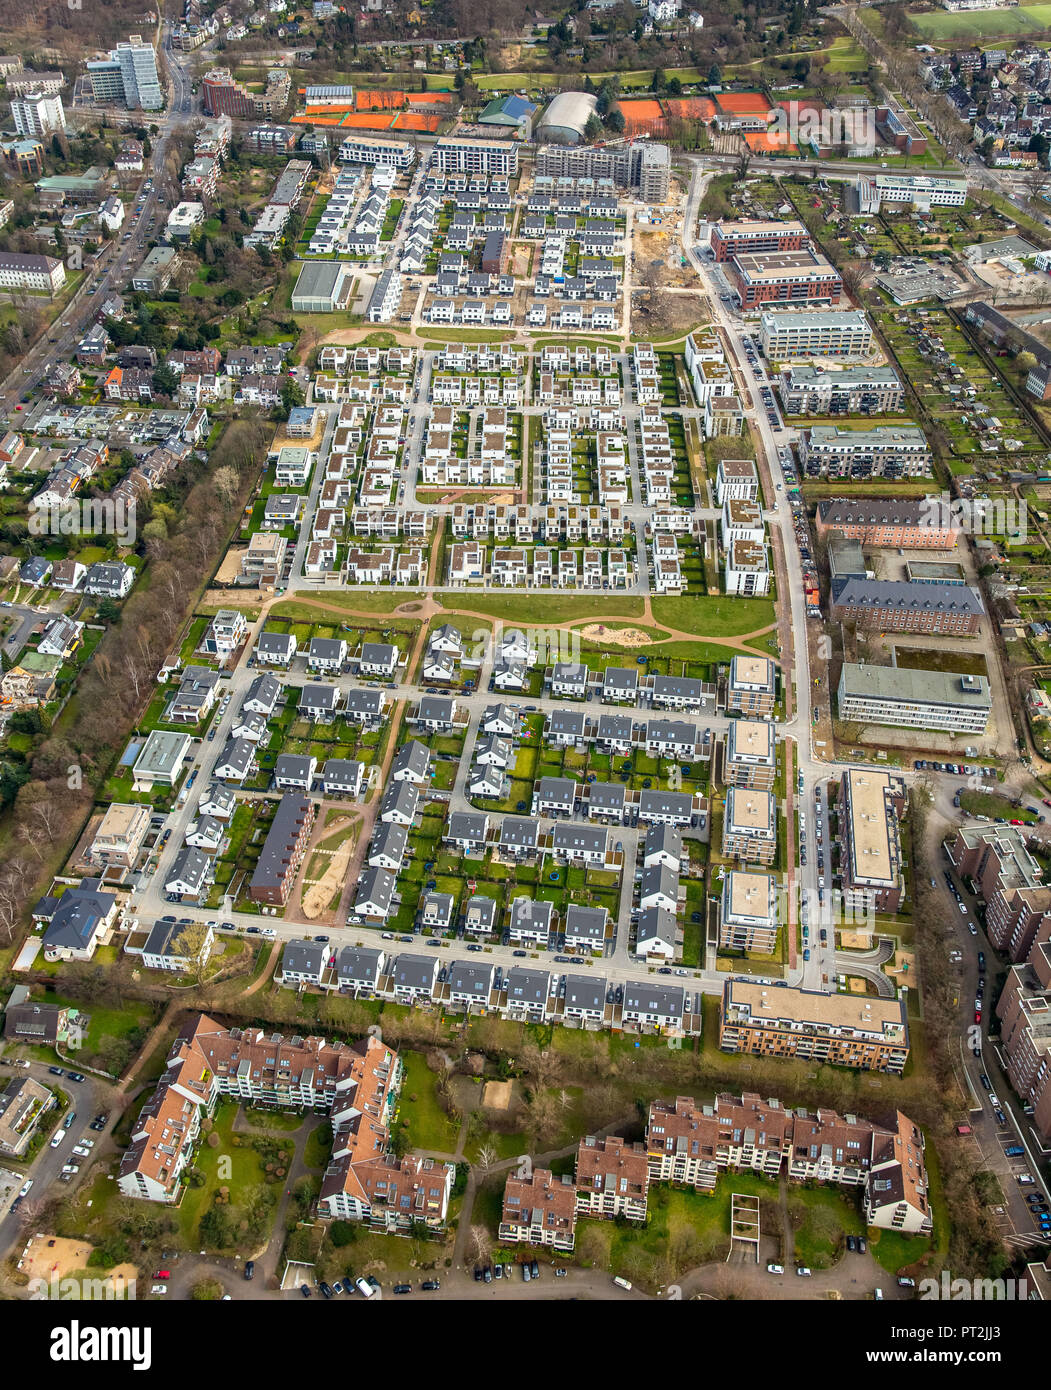 Nouvelle zone de développement, l'ancien Reitzenstein Gartenstadt Reitzenstein, casernes, Düsseldorf, Rhénanie-du-Nord - Westphalie, Allemagne Banque D'Images